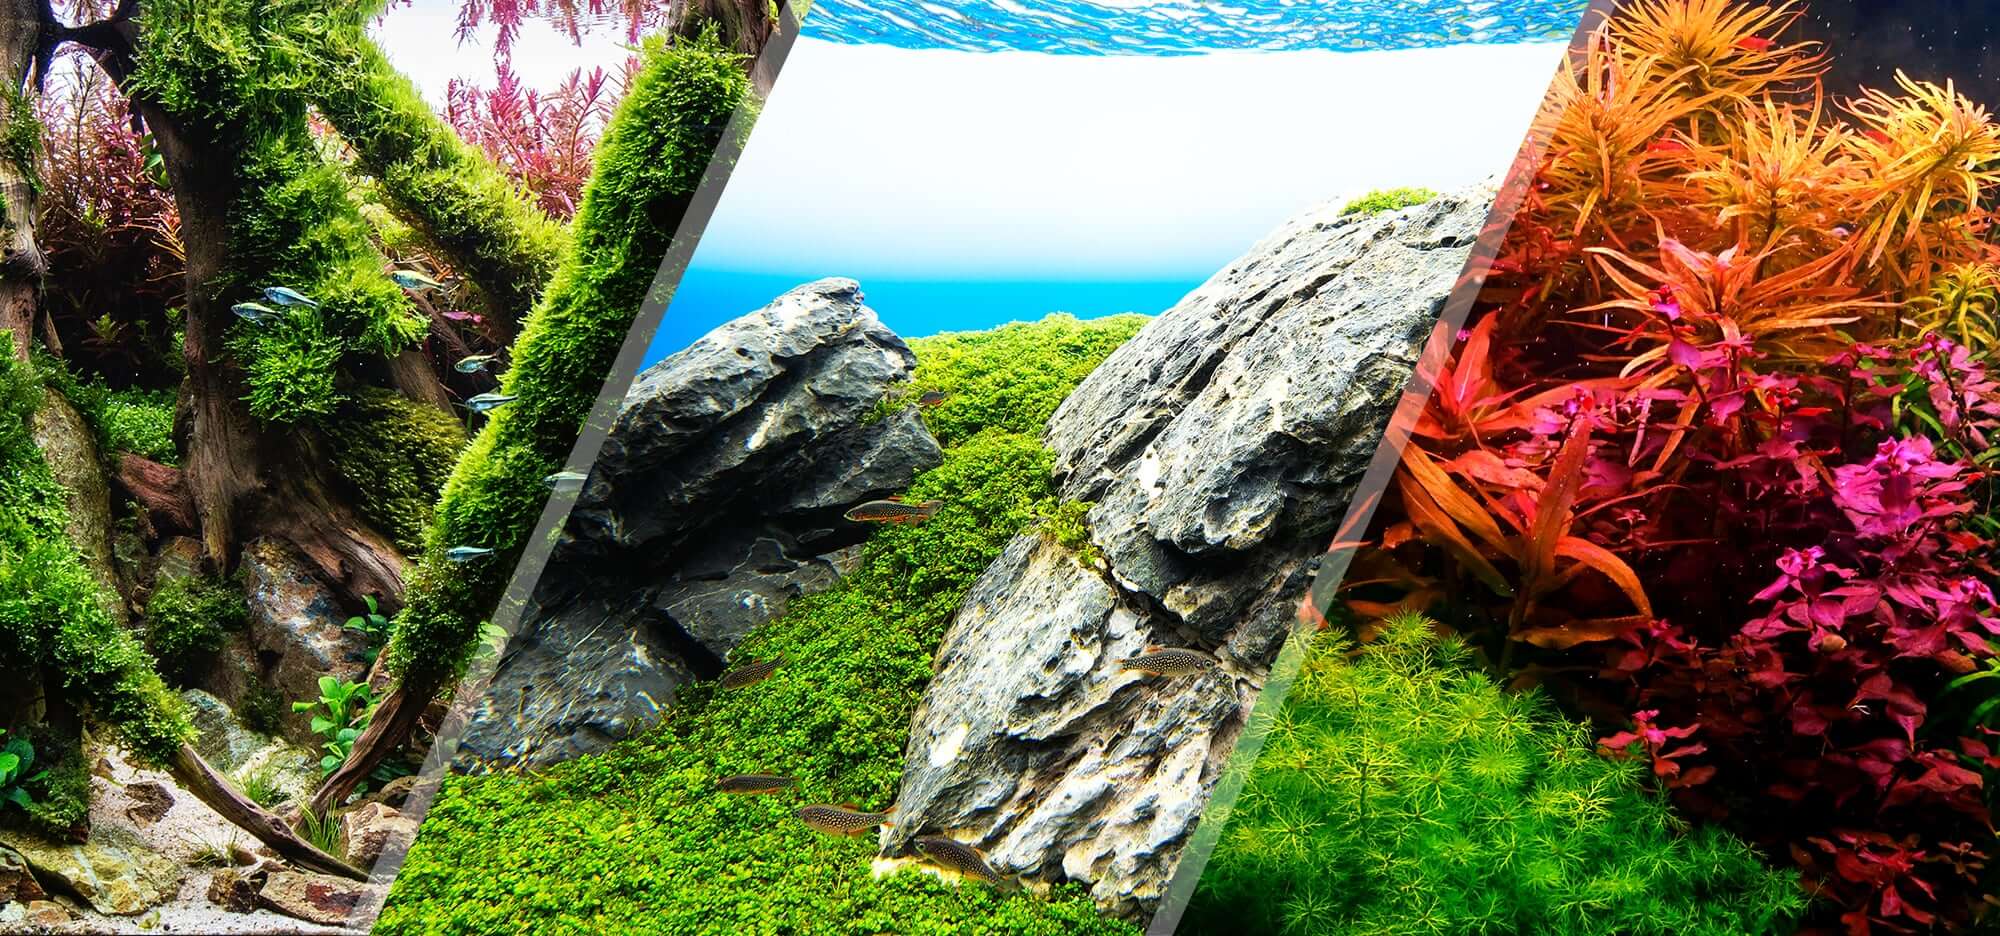 aquascaping-styles-nature-aquarium-iwagumi-dutch-aquarium